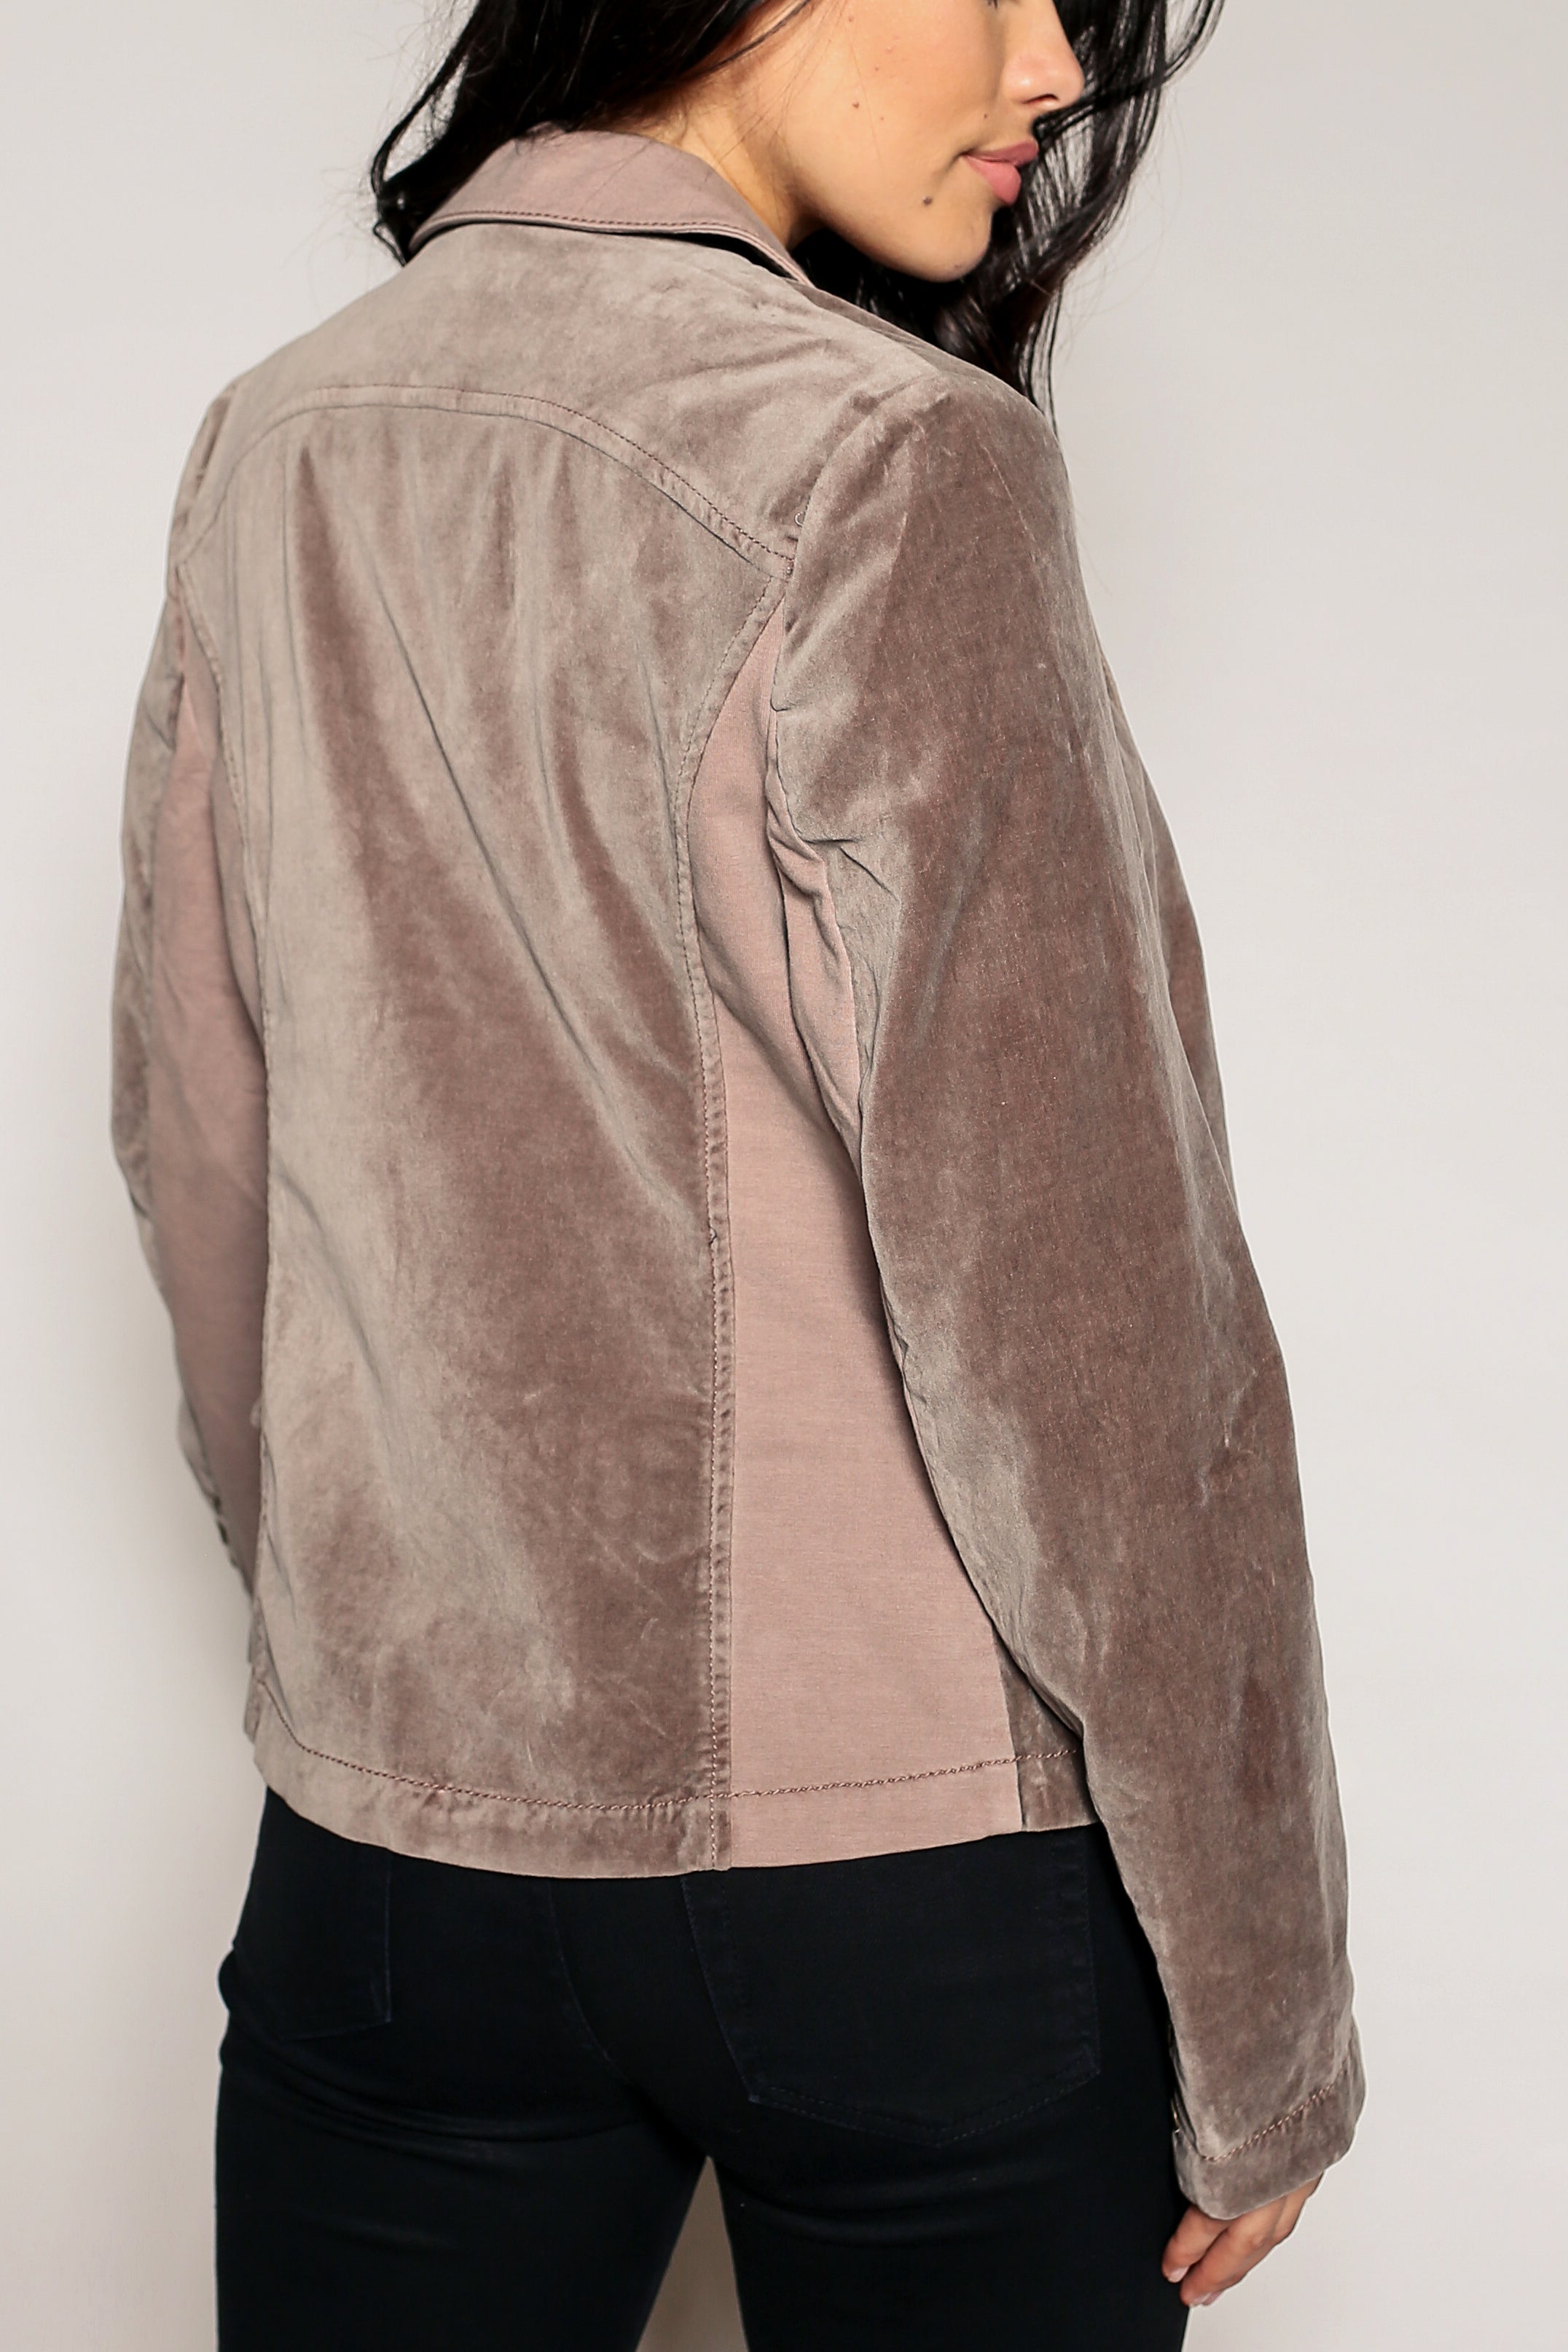 Galleria Velvet Blazer Jacket - Marrakech Clothing